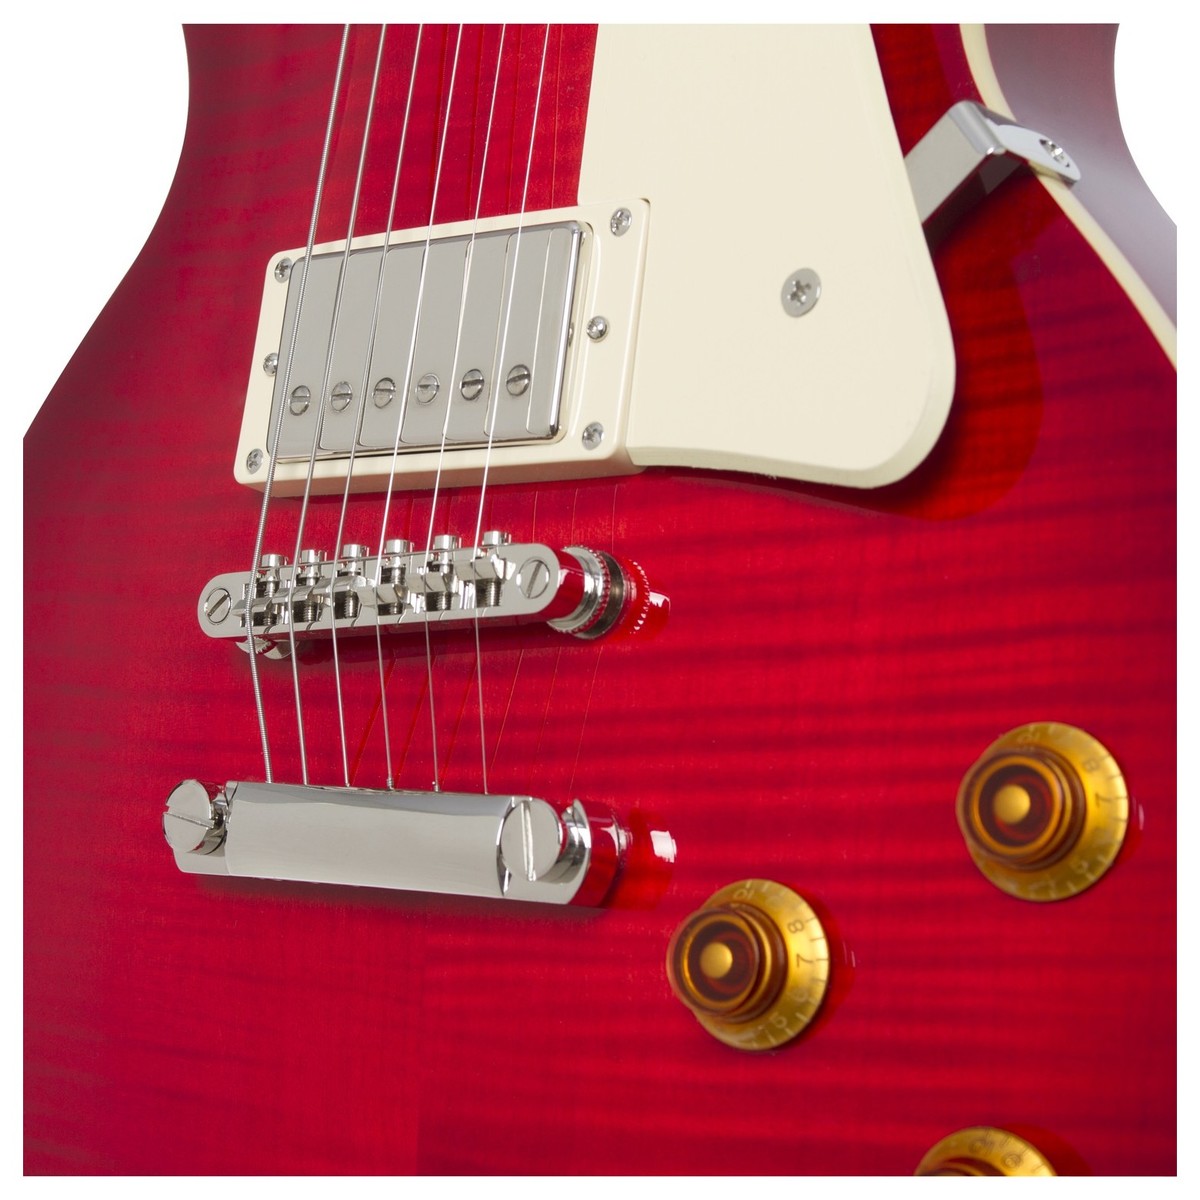 Epiphone Les Paul Standard Plus Top Pro Hh Ht Pf - Blood Orange - Guitarra eléctrica de corte único. - Variation 3